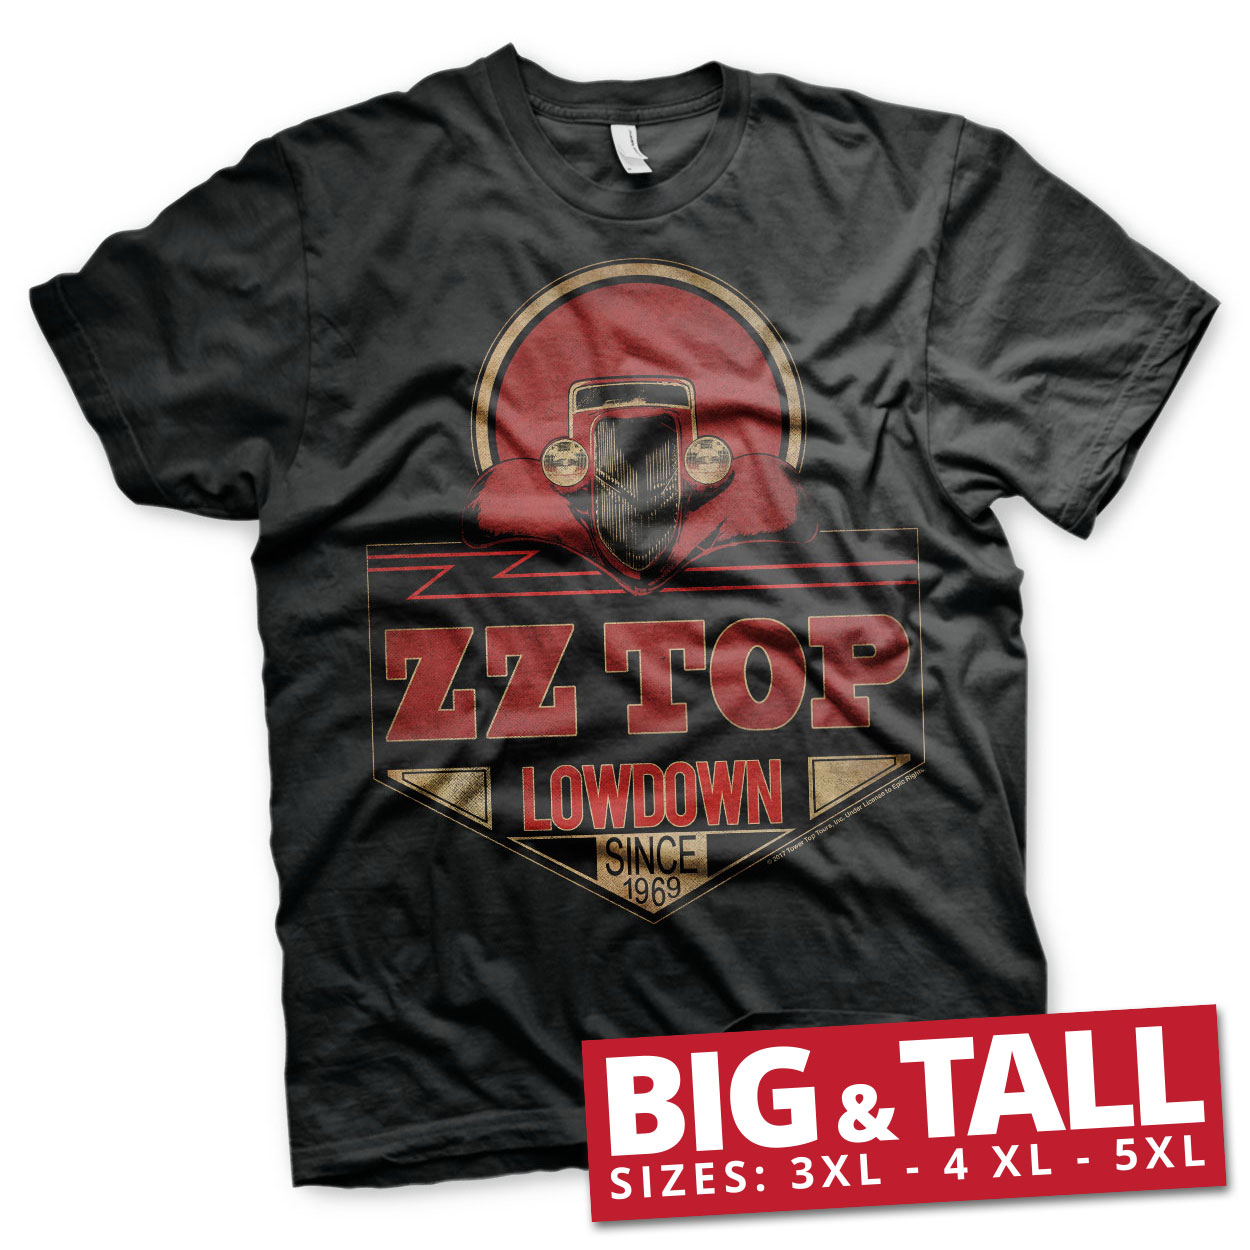 ZZ-Top - Lowdown Since 1969 Big & Tall T-Shirt